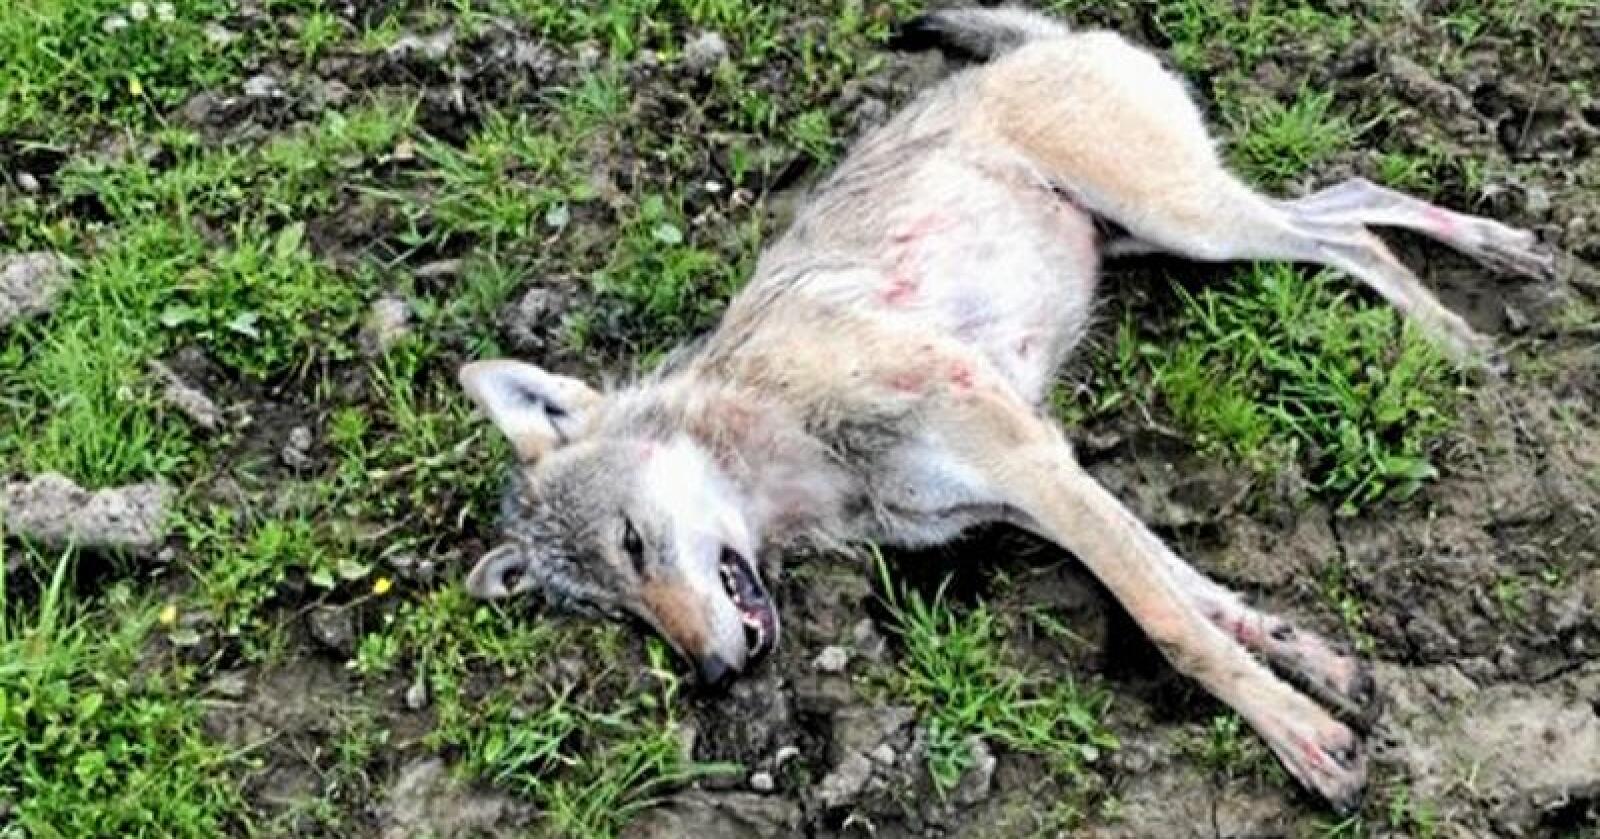 Ulven som ble skutt av en bonde i Sør-Odal tirsdag. Foto: Politiet i Innlandet.